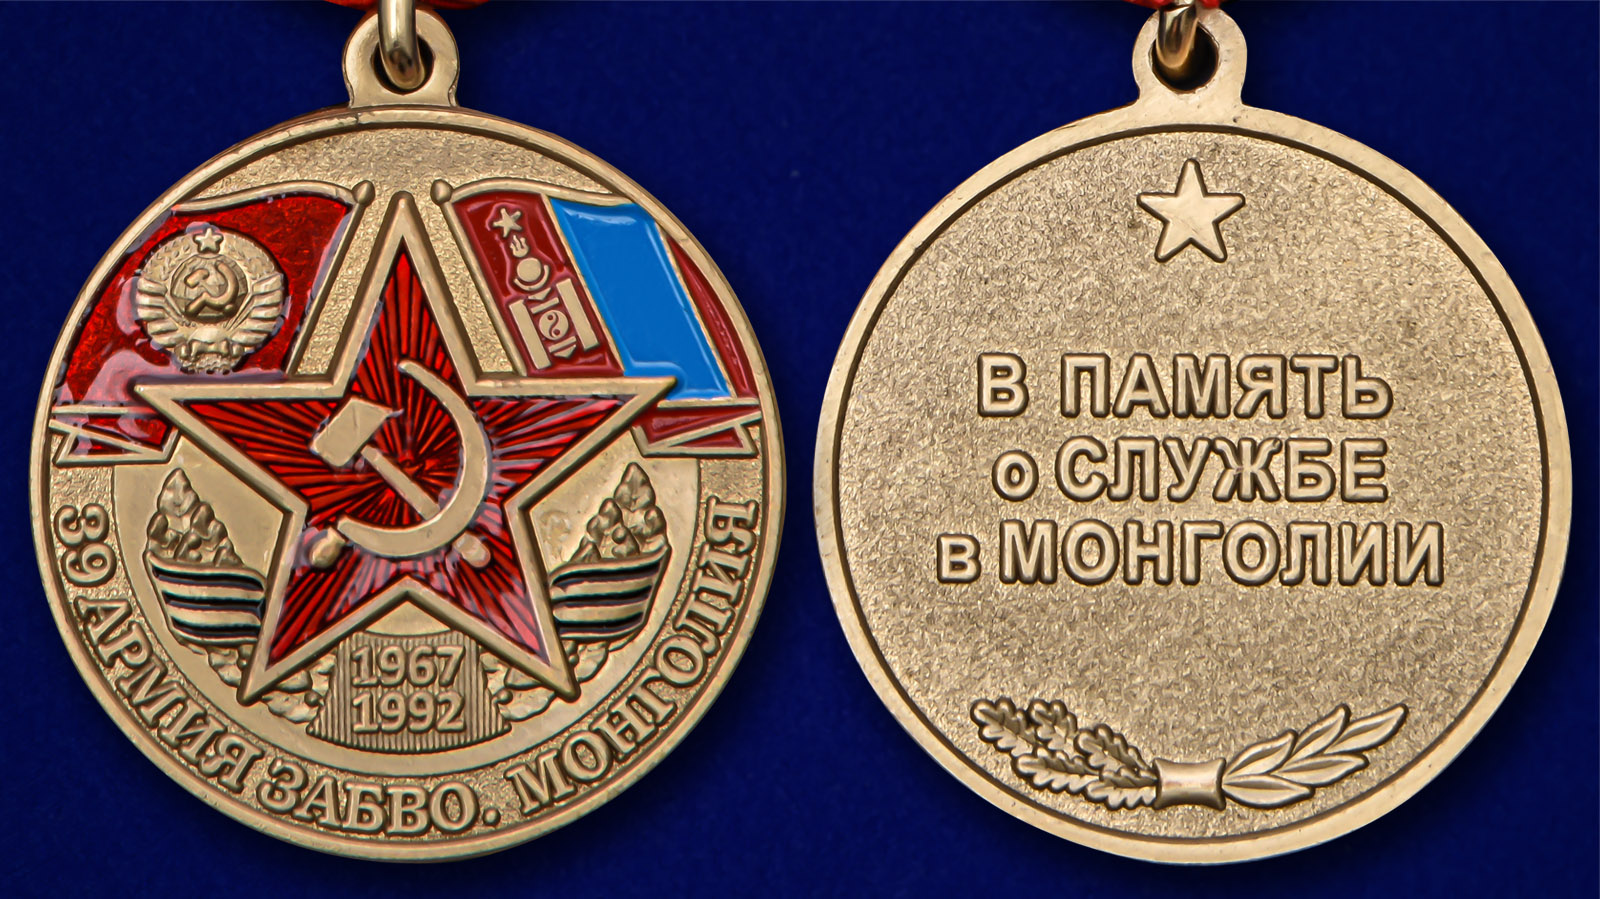 Медаль "39 Армия ЗАБВО. Монголия" - аверс и реверс